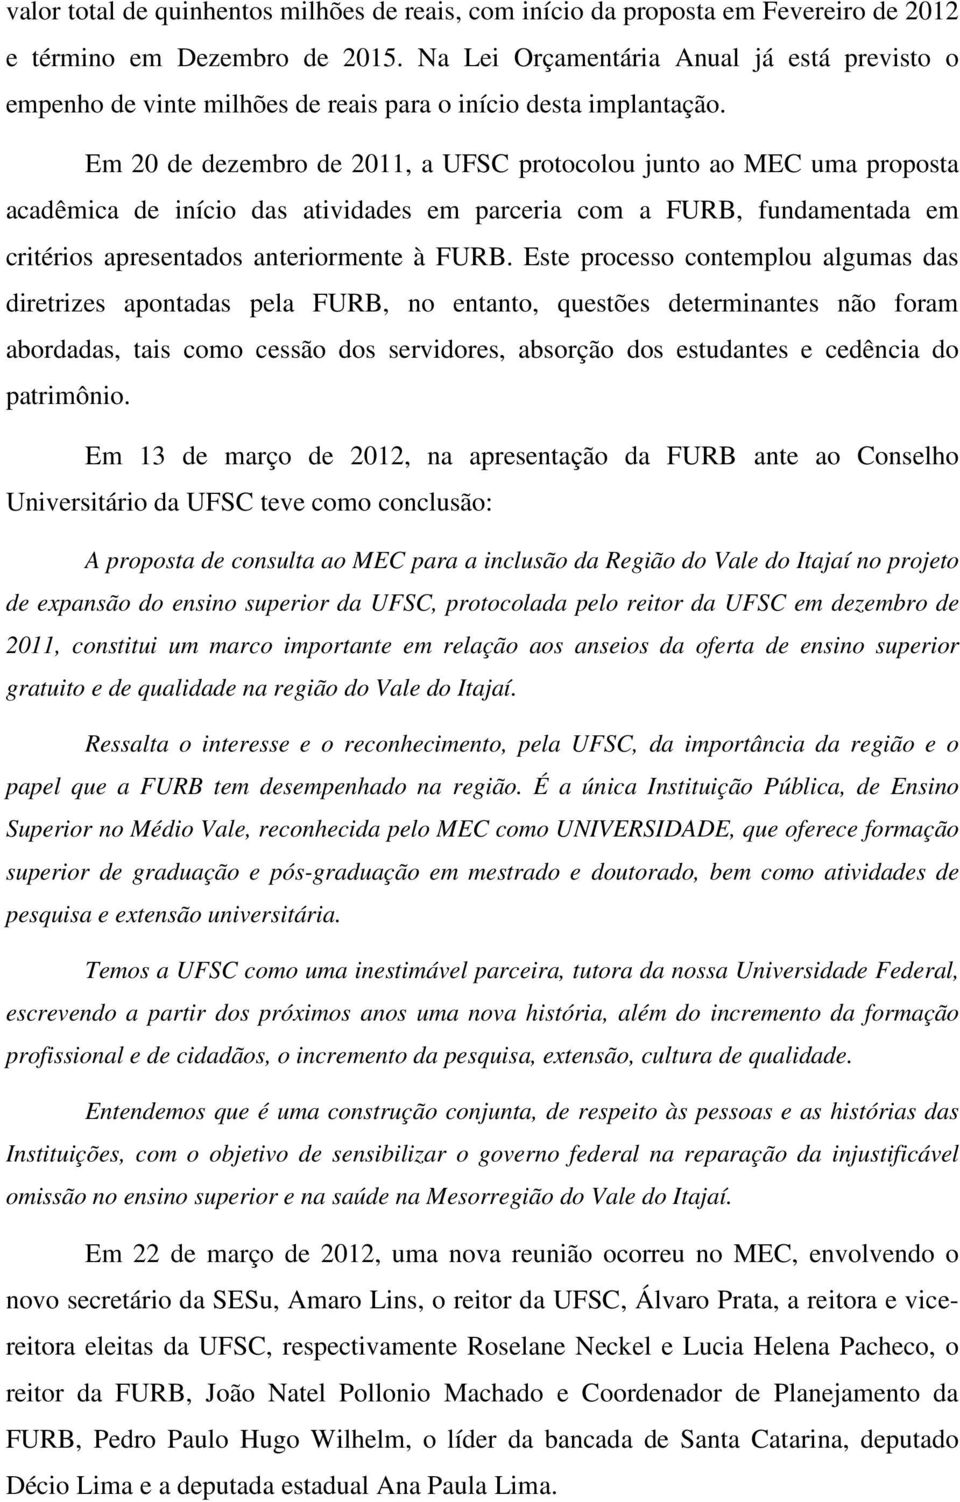 Em 20 de dezembro de 2011, a UFSC protocolou junto ao MEC uma proposta acadêmica de início das atividades em parceria com a FURB, fundamentada em critérios apresentados anteriormente à FURB.